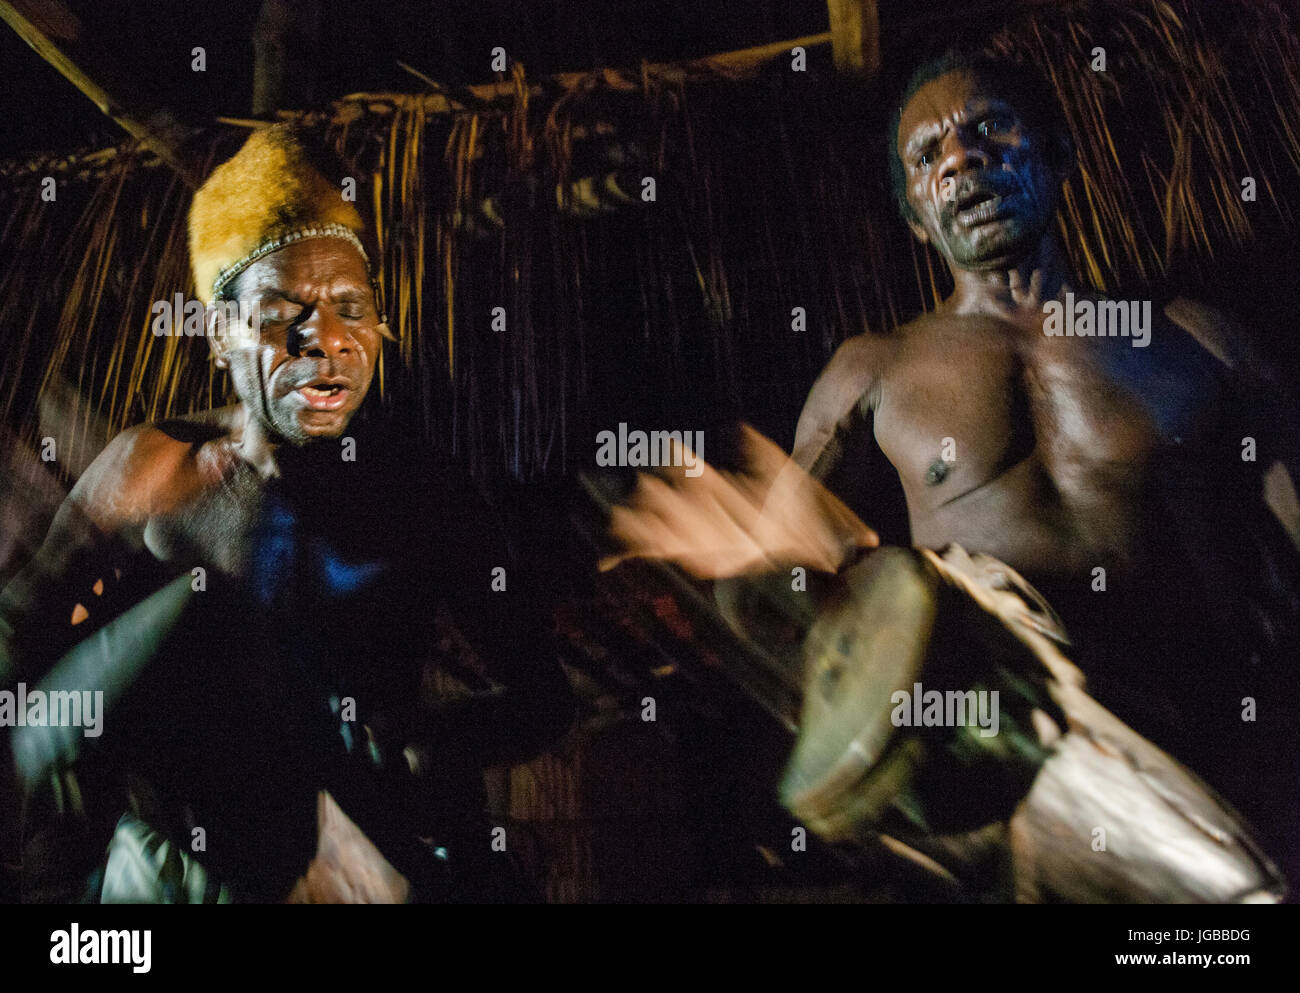 Indonesien, IRIAN JAYA, ASMAT Provinz, JOW Dorf - Juni 12: Männer Asmat Stamm sitzen zu Hause und auf der Trommel zu spielen. Stockfoto